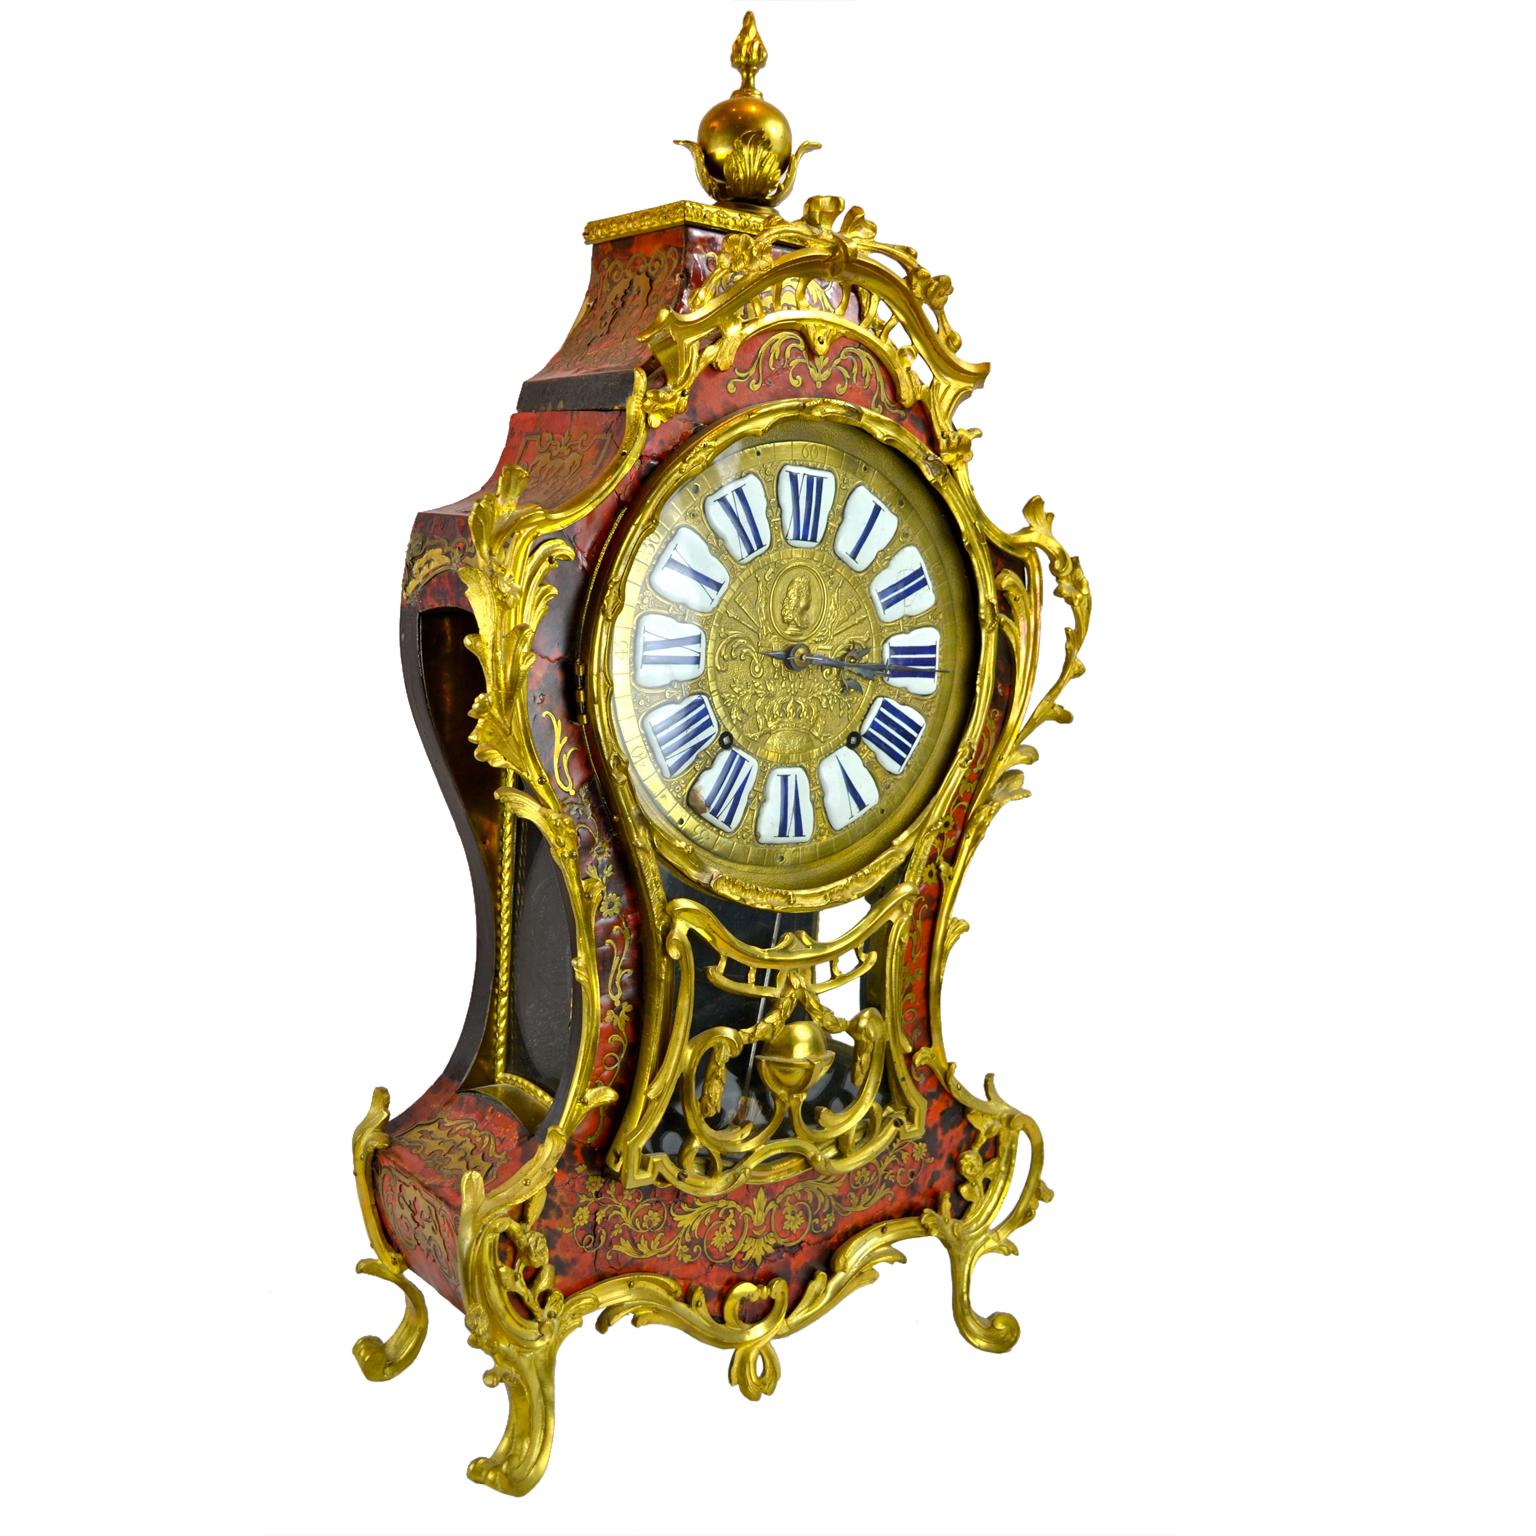 Pendule de cheminée d'époque Louis XV Boulle  L'étui est incrusté de laiton et décoré de rinceaux rococo et de montures en bronze doré.  Le plateau incliné amovible de l'étui est surmonté d'une boule et d'un gland dorés.  
L'horloge possède son